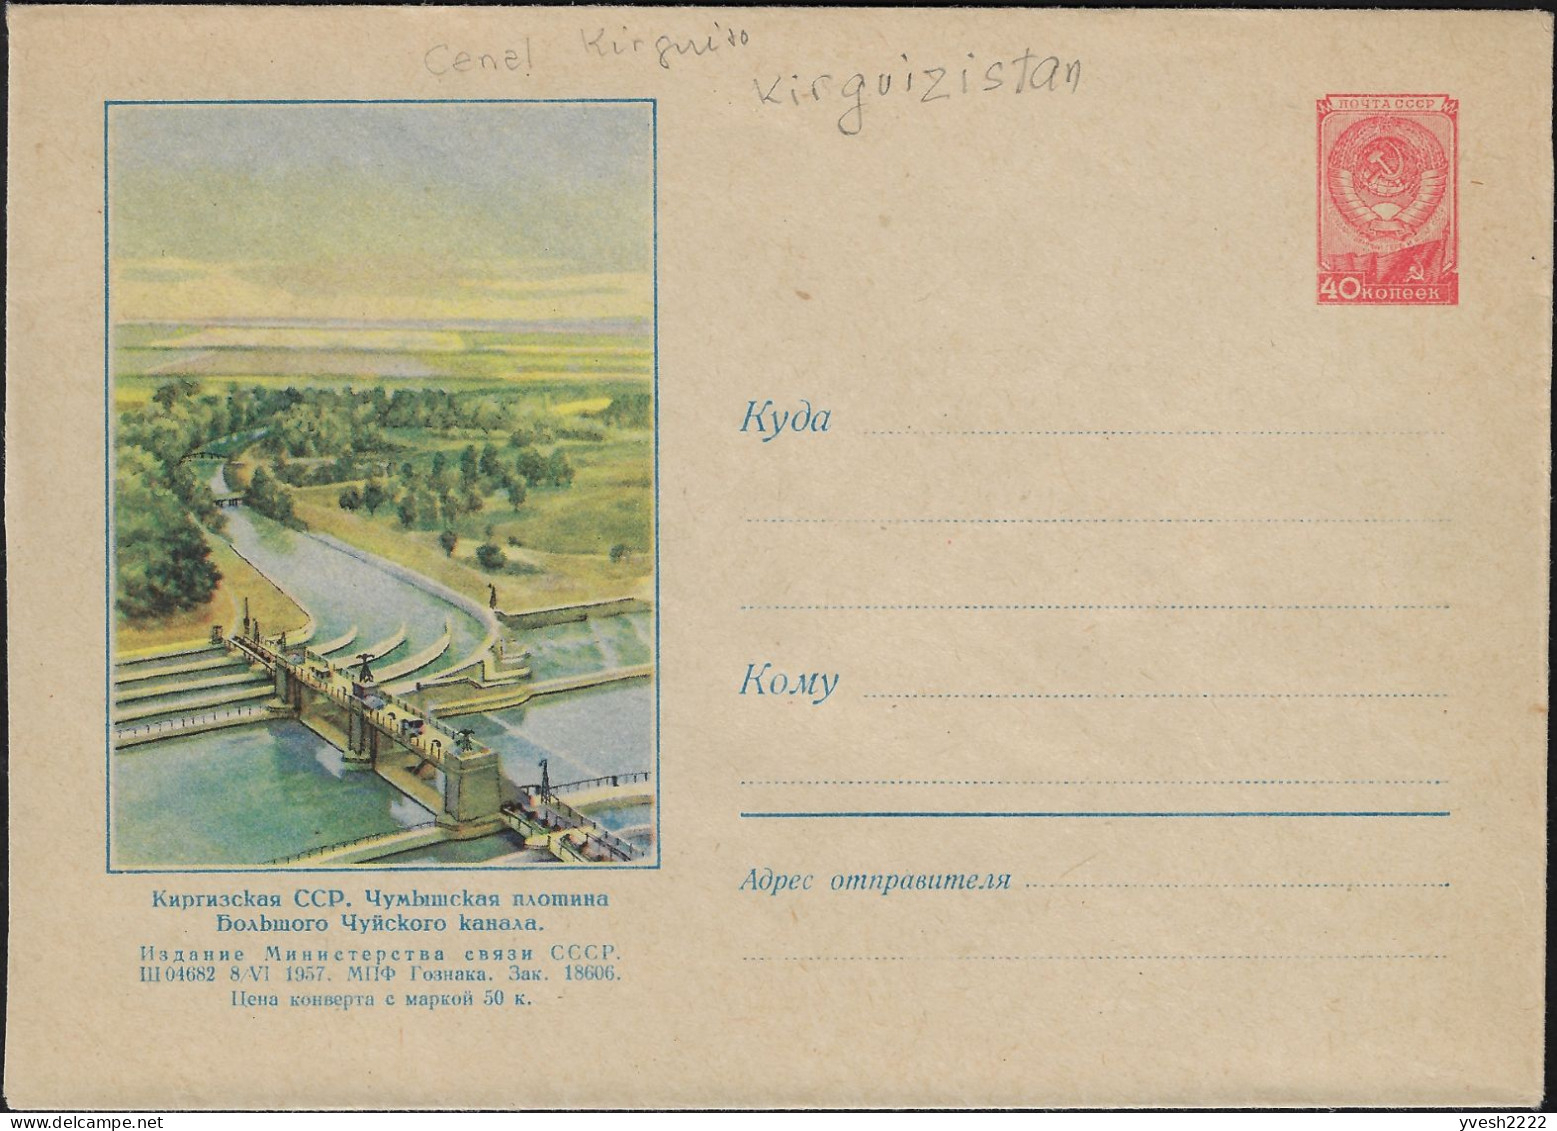 Kirghizstan, Occupation Soviétique. Entier Postal Illustré, Grand Canal De Chüy Et Son Barrage Chumysh - Water